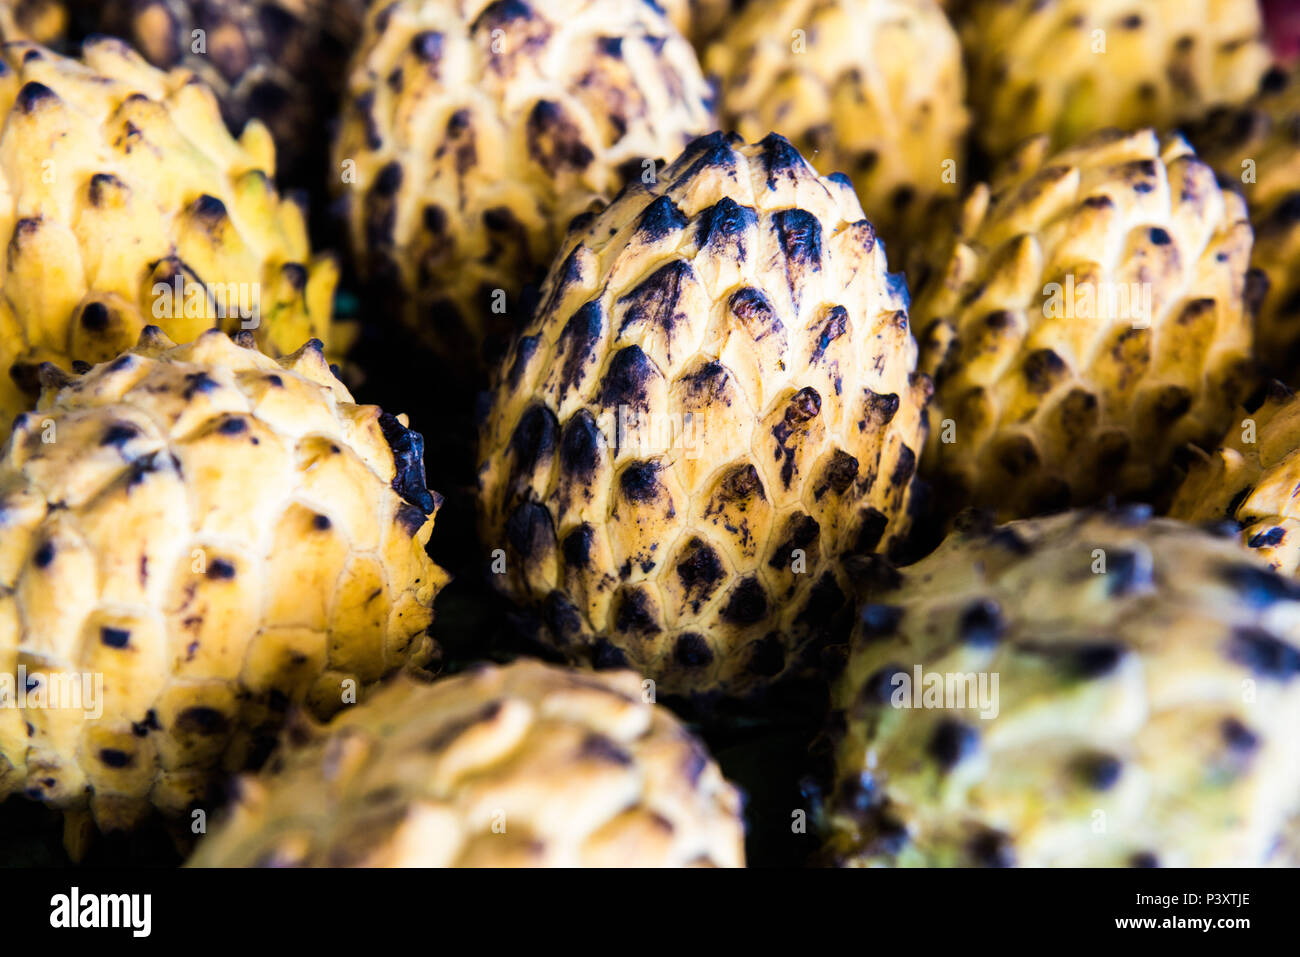 Biriba, ata, verdadeira condessa, araticum patia, Rollinia mucosa, fruta da regi‹o amazônica durante feira de produtos regionais em Iranduba/AM. Stock Photo